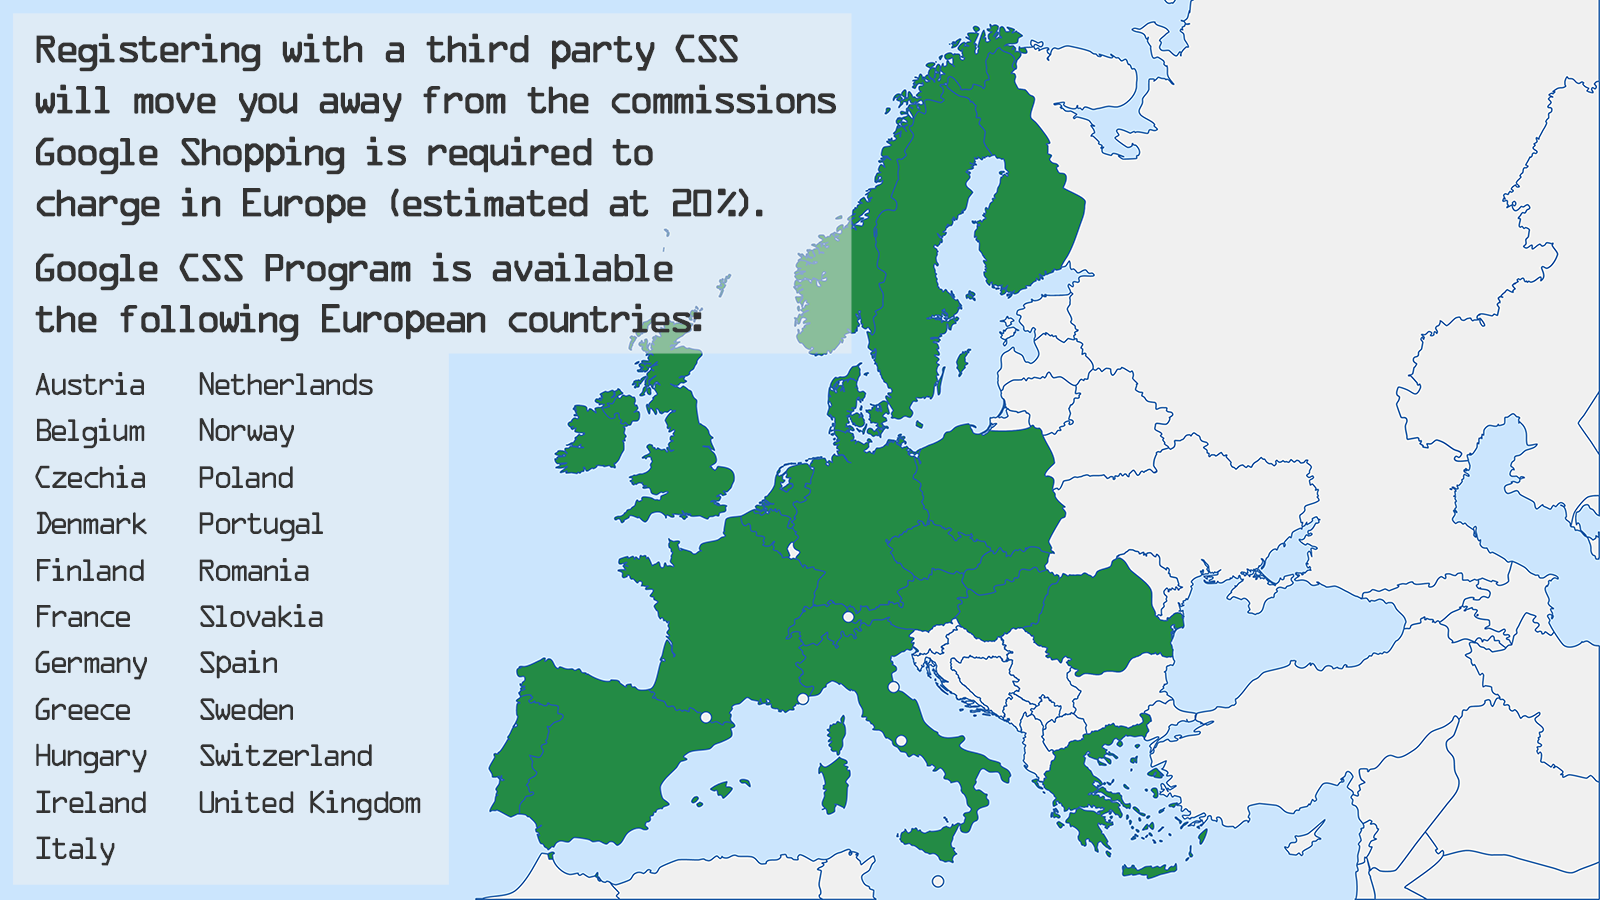 O Programa Google CSS está disponível em 21 países europeus